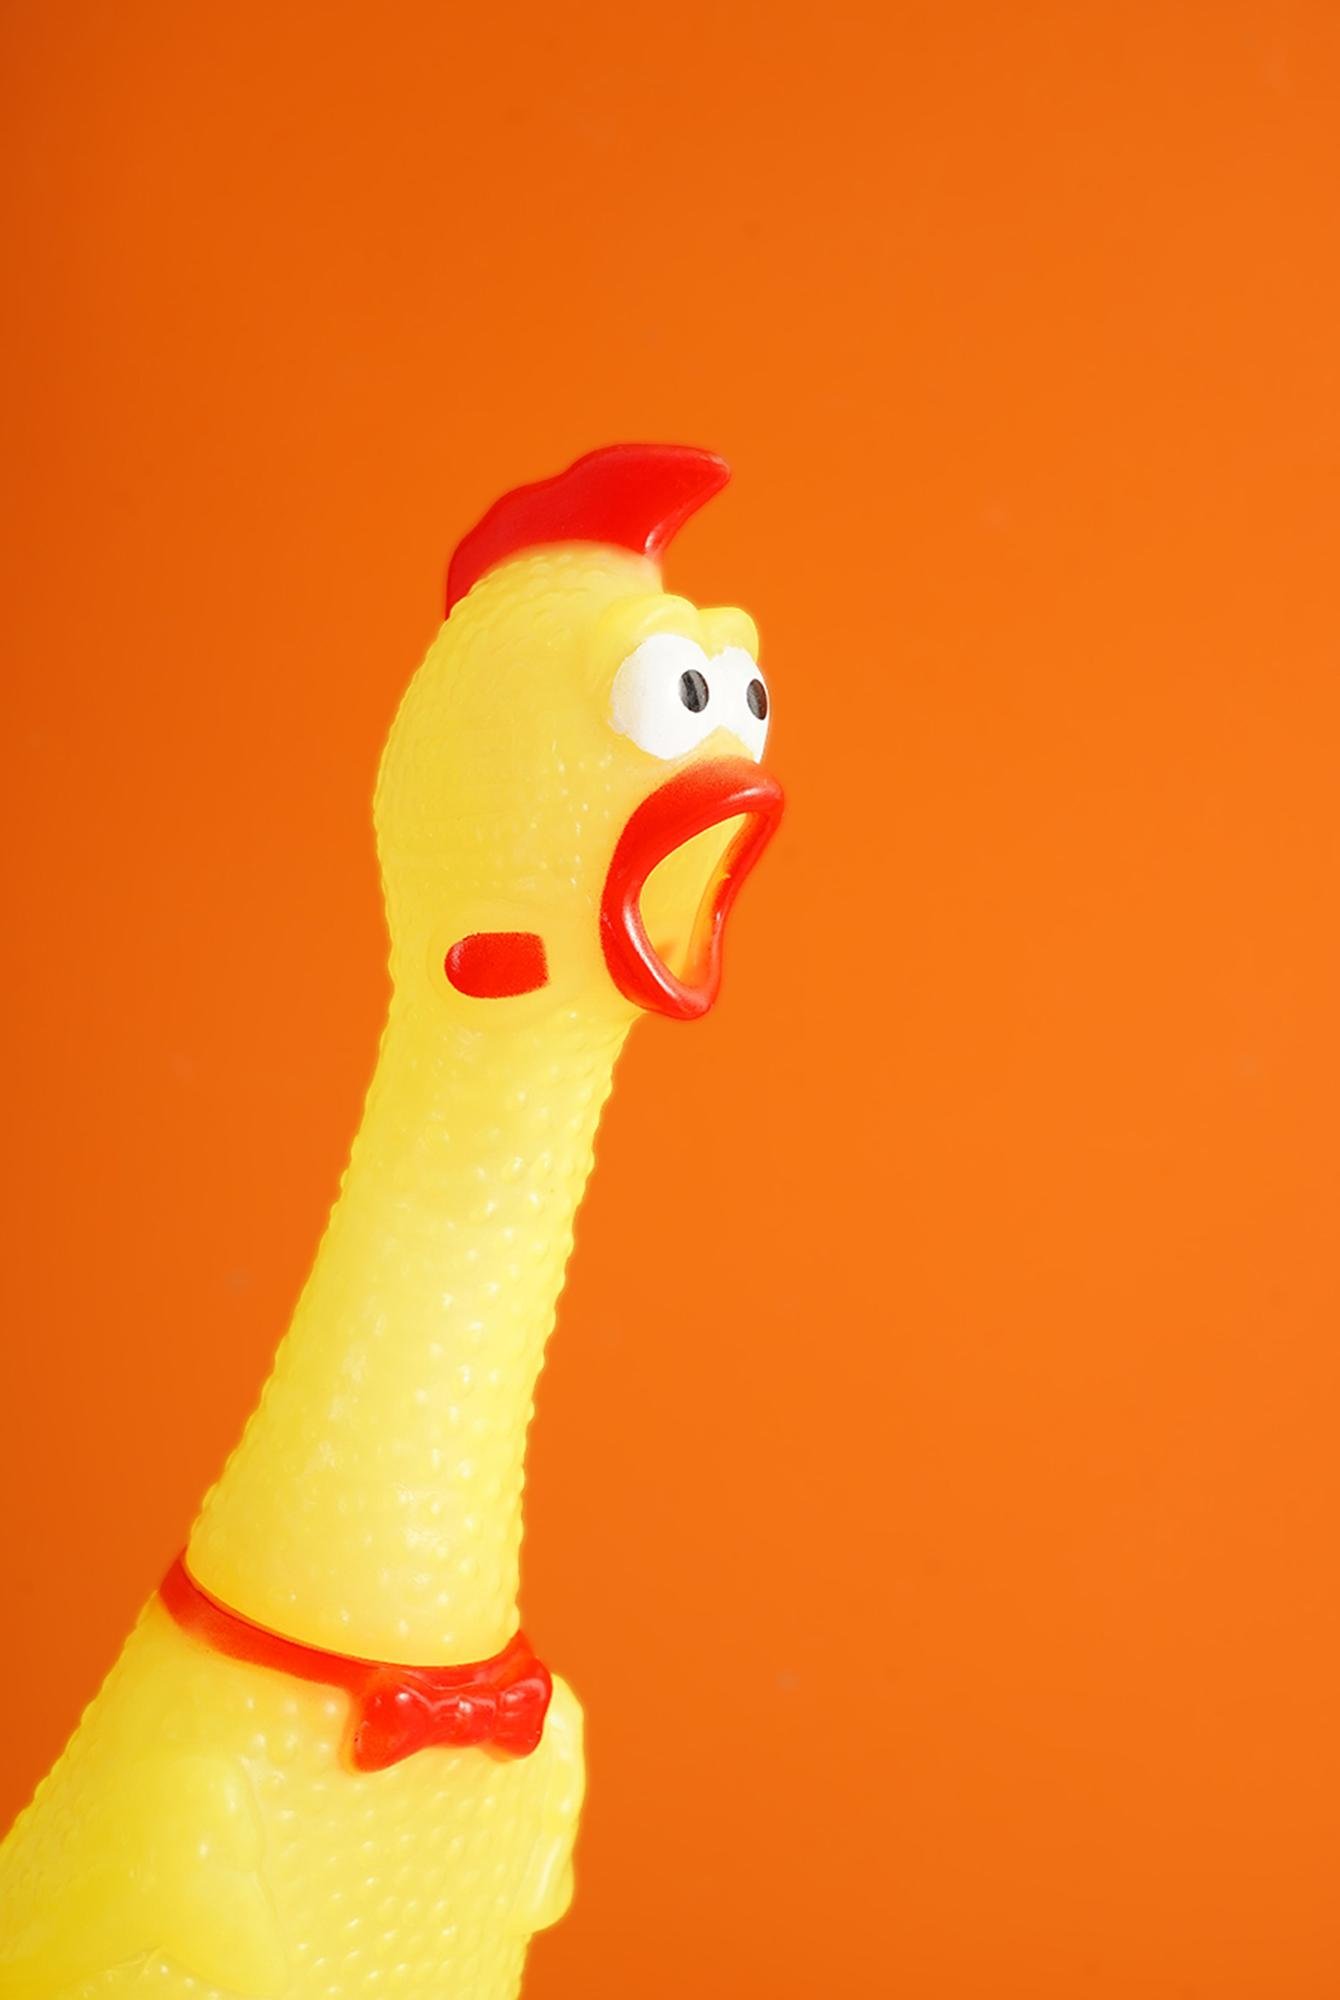  Yoyoso Ses Çıkaran Tavuk Figür Oyuncak Sarı 8 x 40 cm